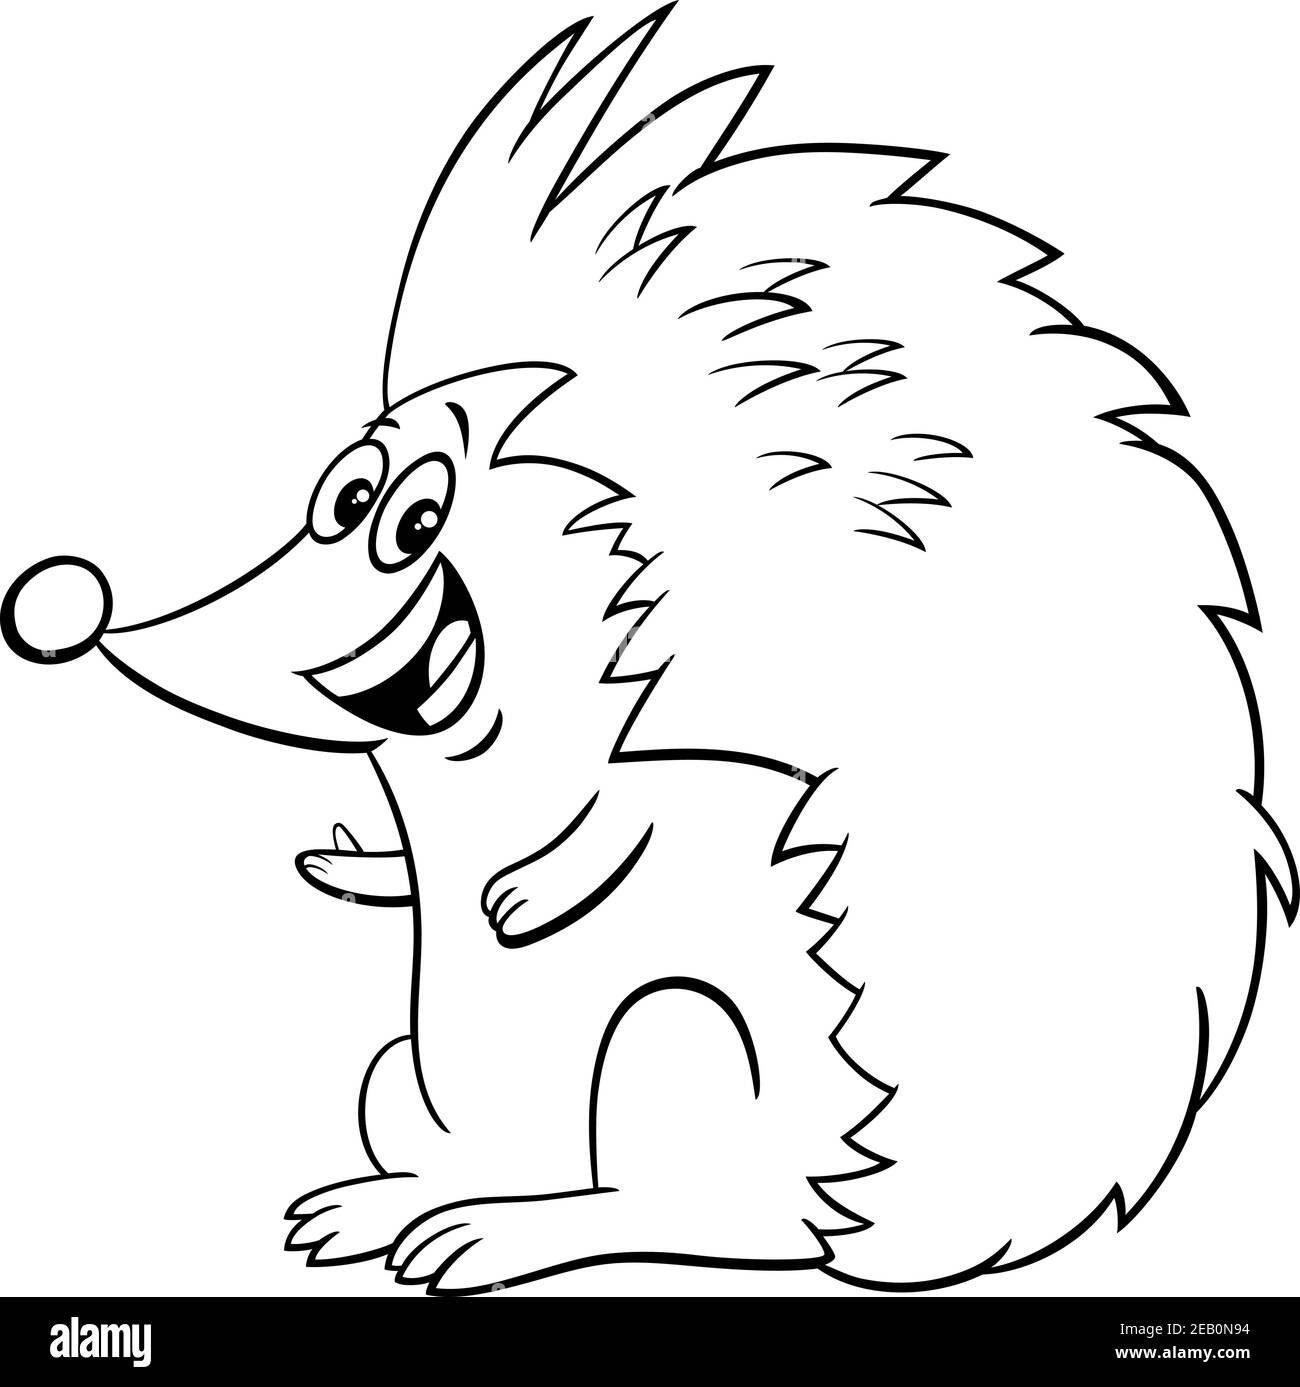 Hedgehog Illustration Black And White